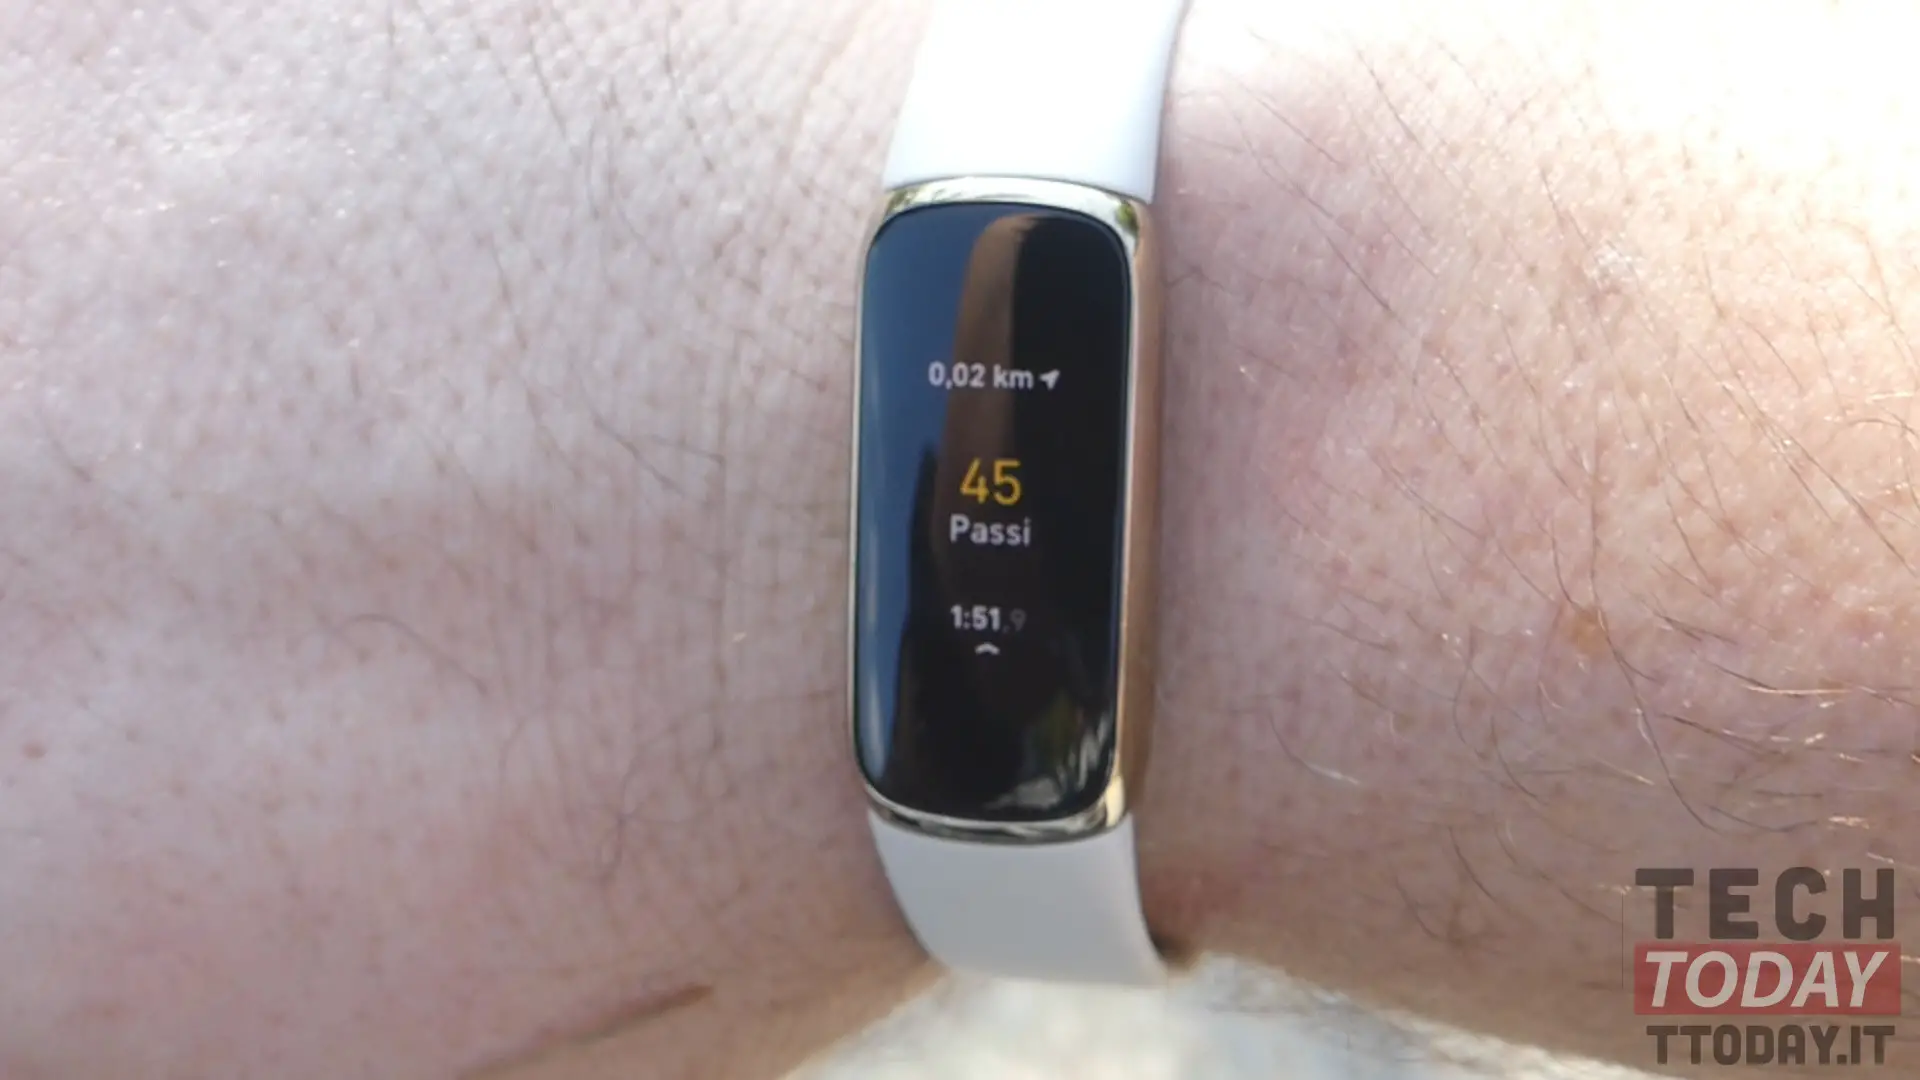 Reseña: Fitbit Luxe, el smartwatch que combina lujo con ejercicio